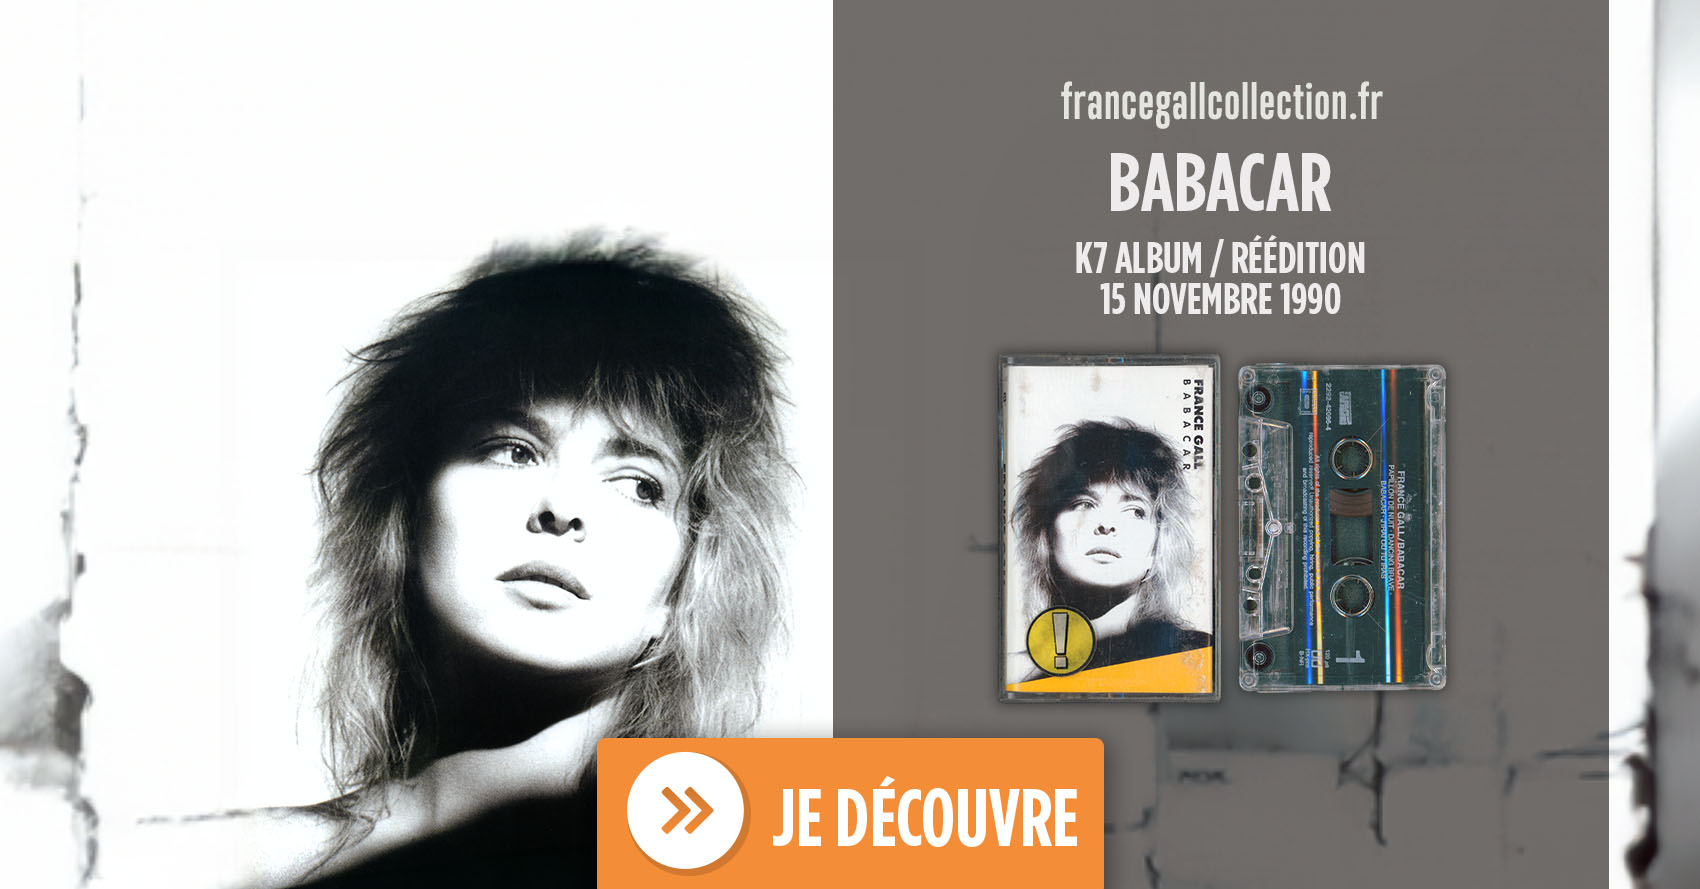 Cette édition au format cassette du 15 novembre 1990 Babacar, le 6ème album studio que Michel Berger a produit pour France Gall, est parue en même temps que la série d’albums réédités en 1990.